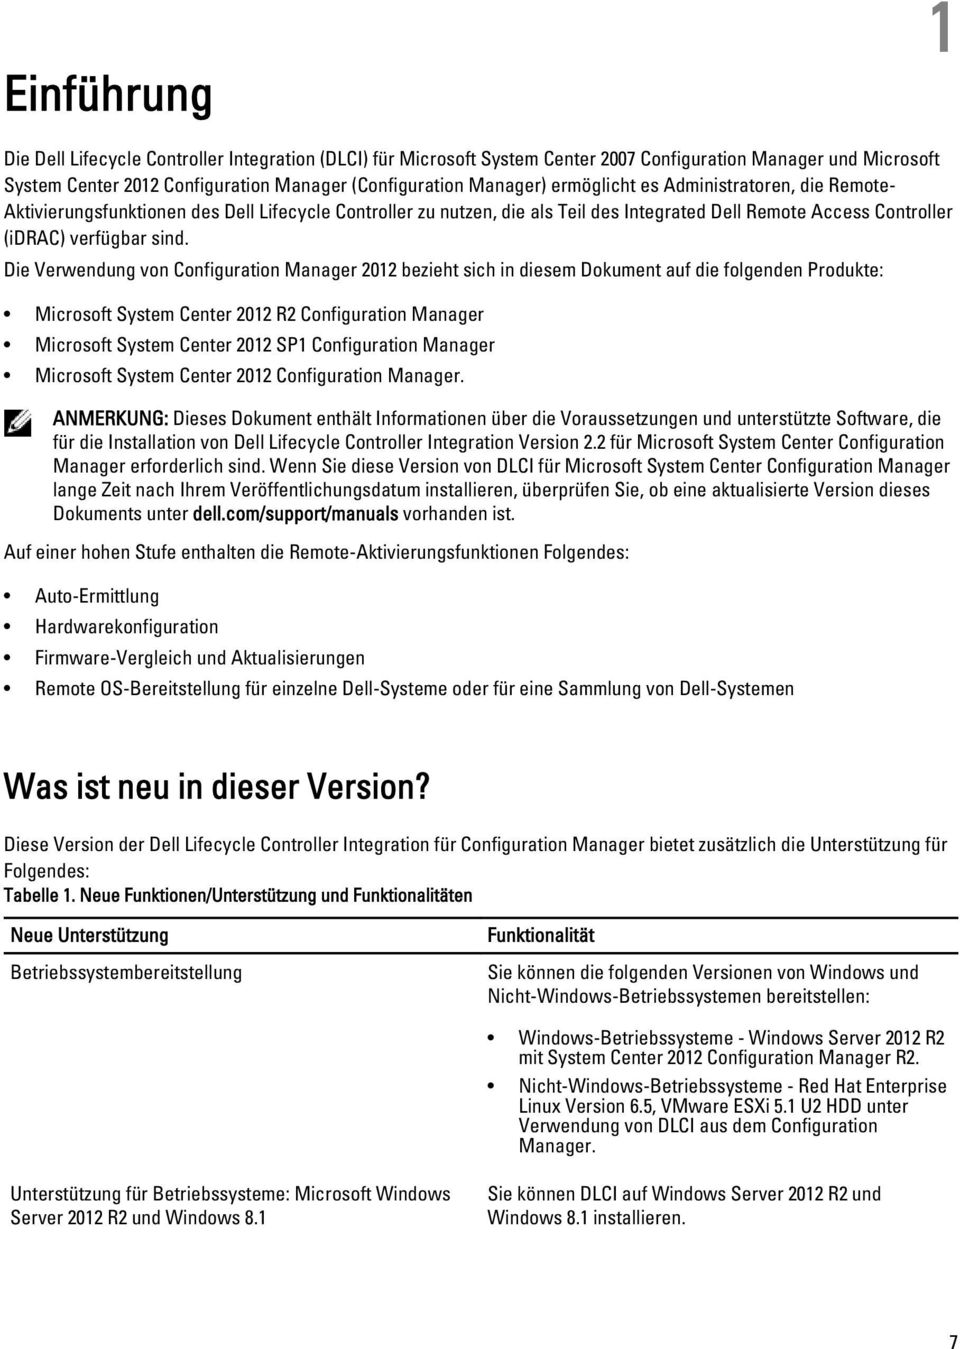 Die Verwendung von Configuration Manager 2012 bezieht sich in diesem Dokument auf die folgenden Produkte: Microsoft System Center 2012 R2 Configuration Manager Microsoft System Center 2012 SP1